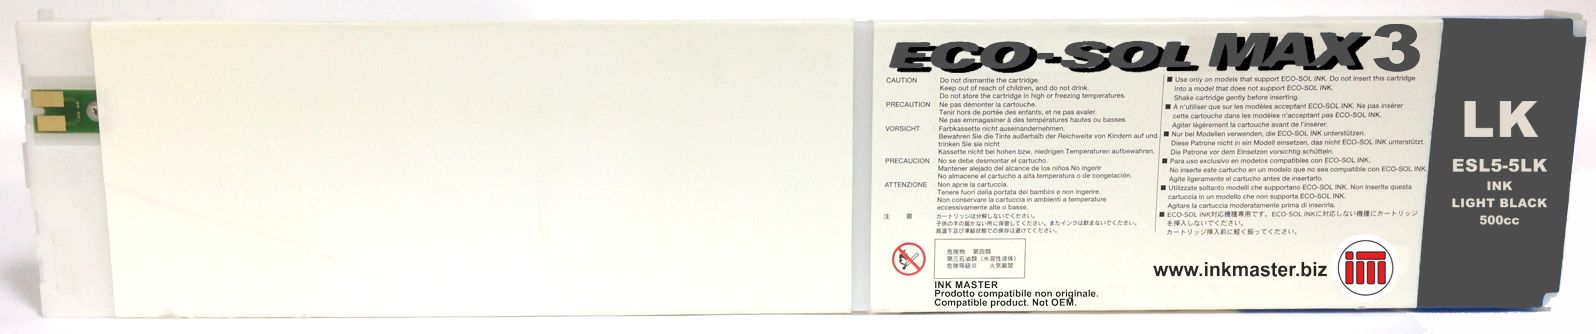 Cartuccia rigenerata ROLAND ECO-SOL MAX 3 LIGHT BLACK per ROLAND BN-20 RF-640 SP-300i SP-540i VS-300i VS-540i VS-640i XR-640